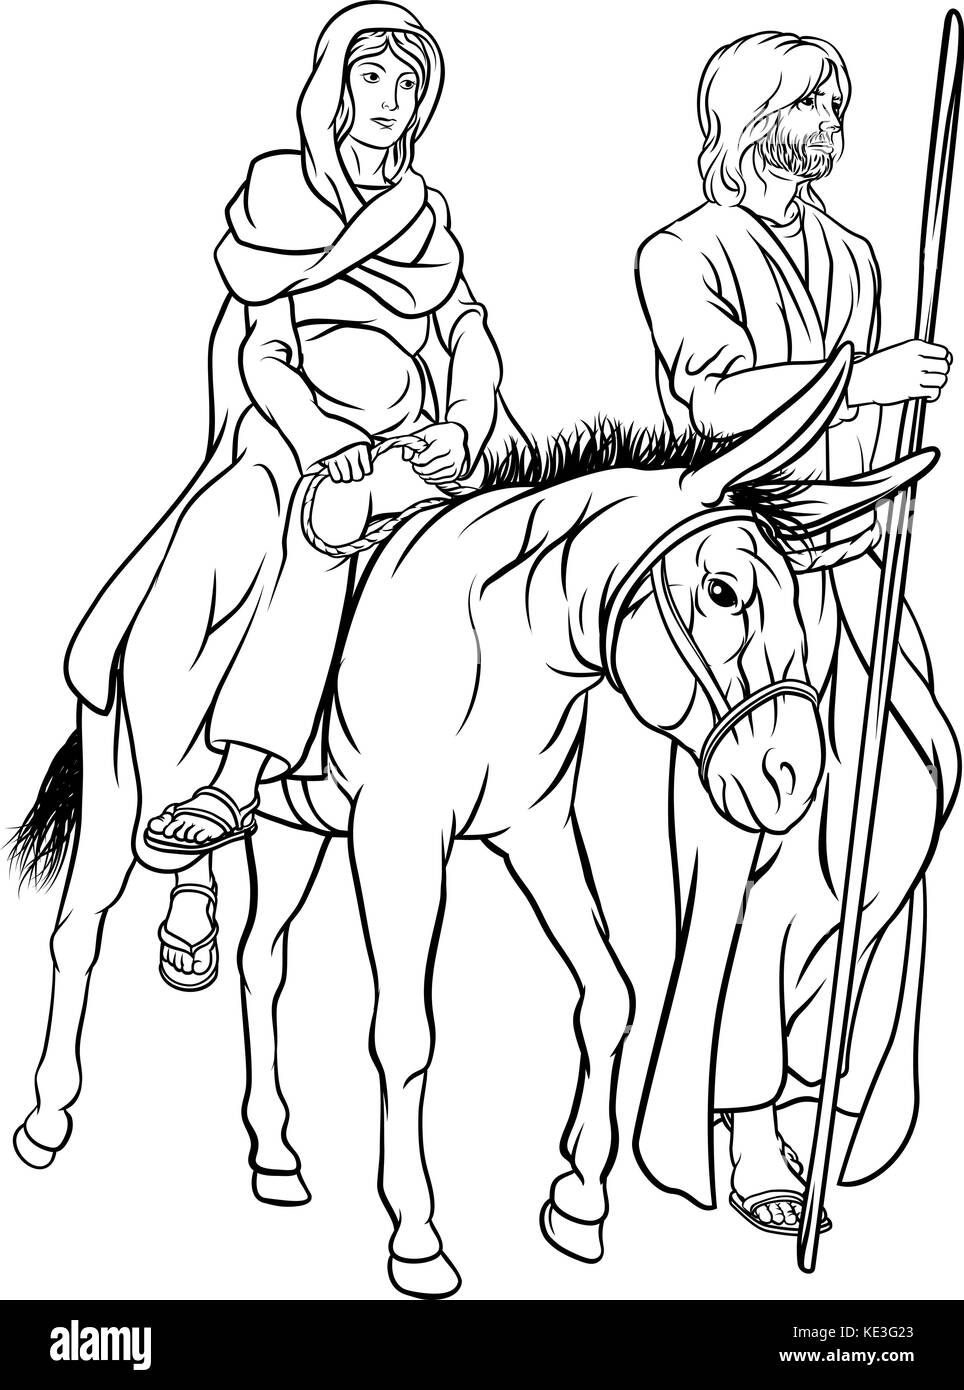 Presepe Cristiano religioso illustrazione di Natale di Giuseppe e della Vergine Maria madre di Gesù che cavalcano un asino durante il loro viaggio nel deserto Illustrazione Vettoriale